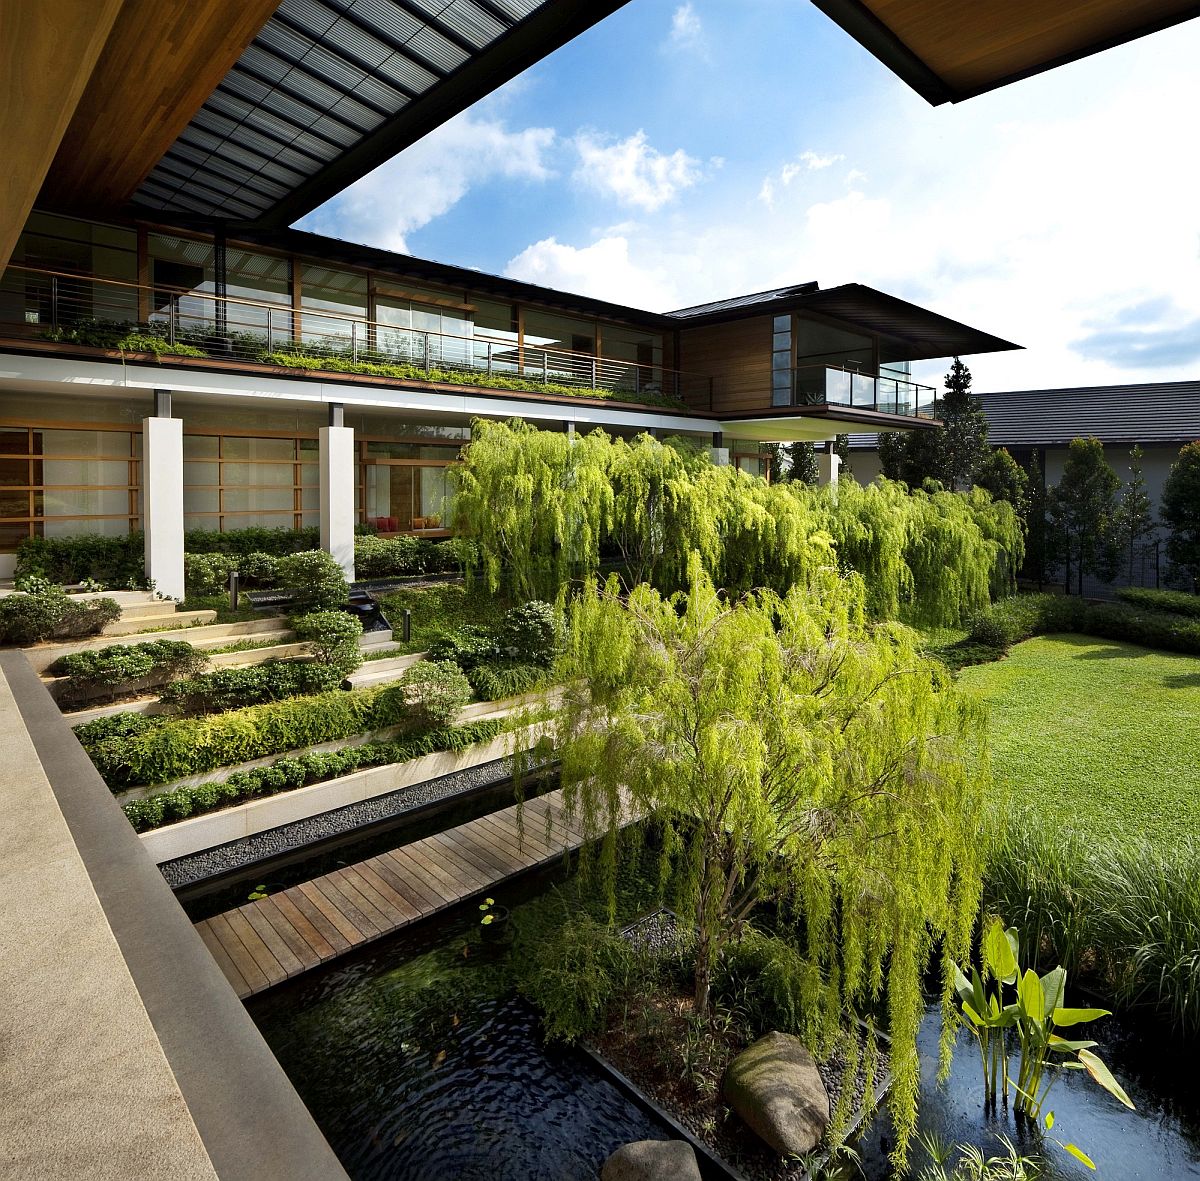 Cấu trúc của Tembusu House được bao phủ bởi một mái nhà lớn, kiểu dáng đẹp với phần mái nhô cao, bảo vệ ngôi nhà chống lại các kiểu thời tiết khắc nghiệt. Khu vườn trên mái vừa phủ xanh không gian vừa là “máy điều hòa không khí” tự nhiên.